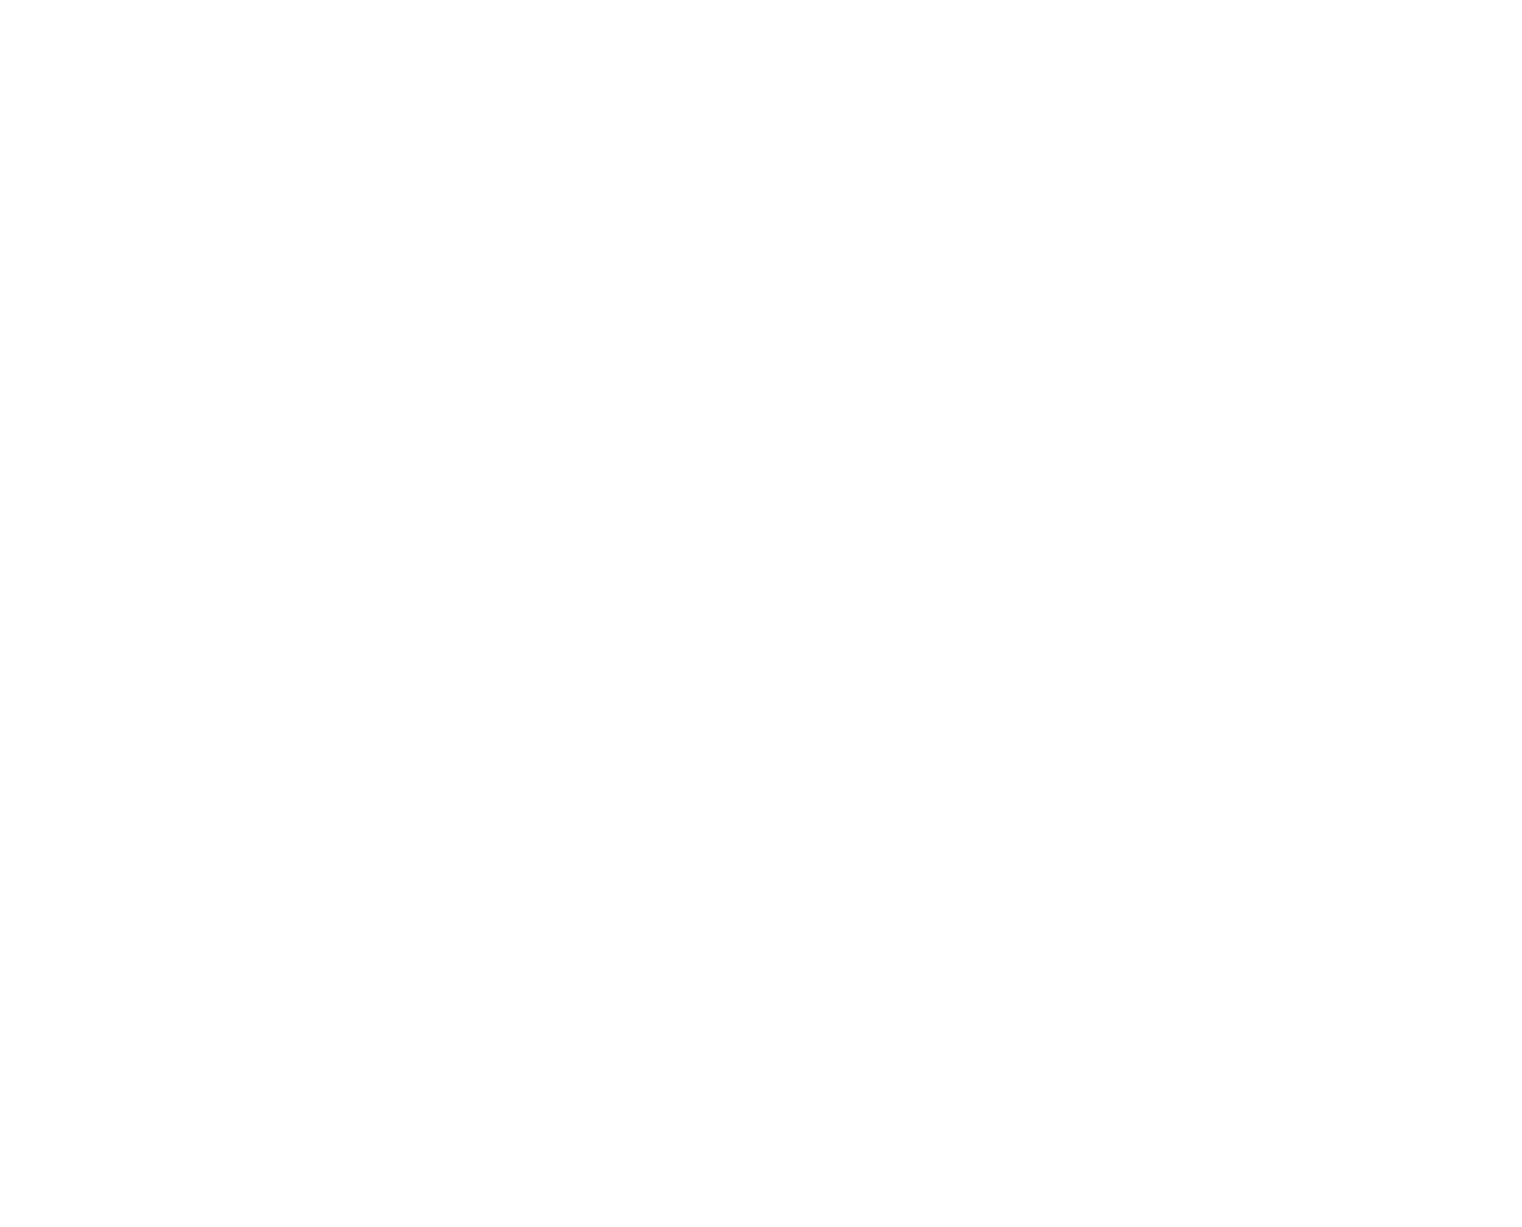 Olvi plc logo pour fonds sombres (PNG transparent)